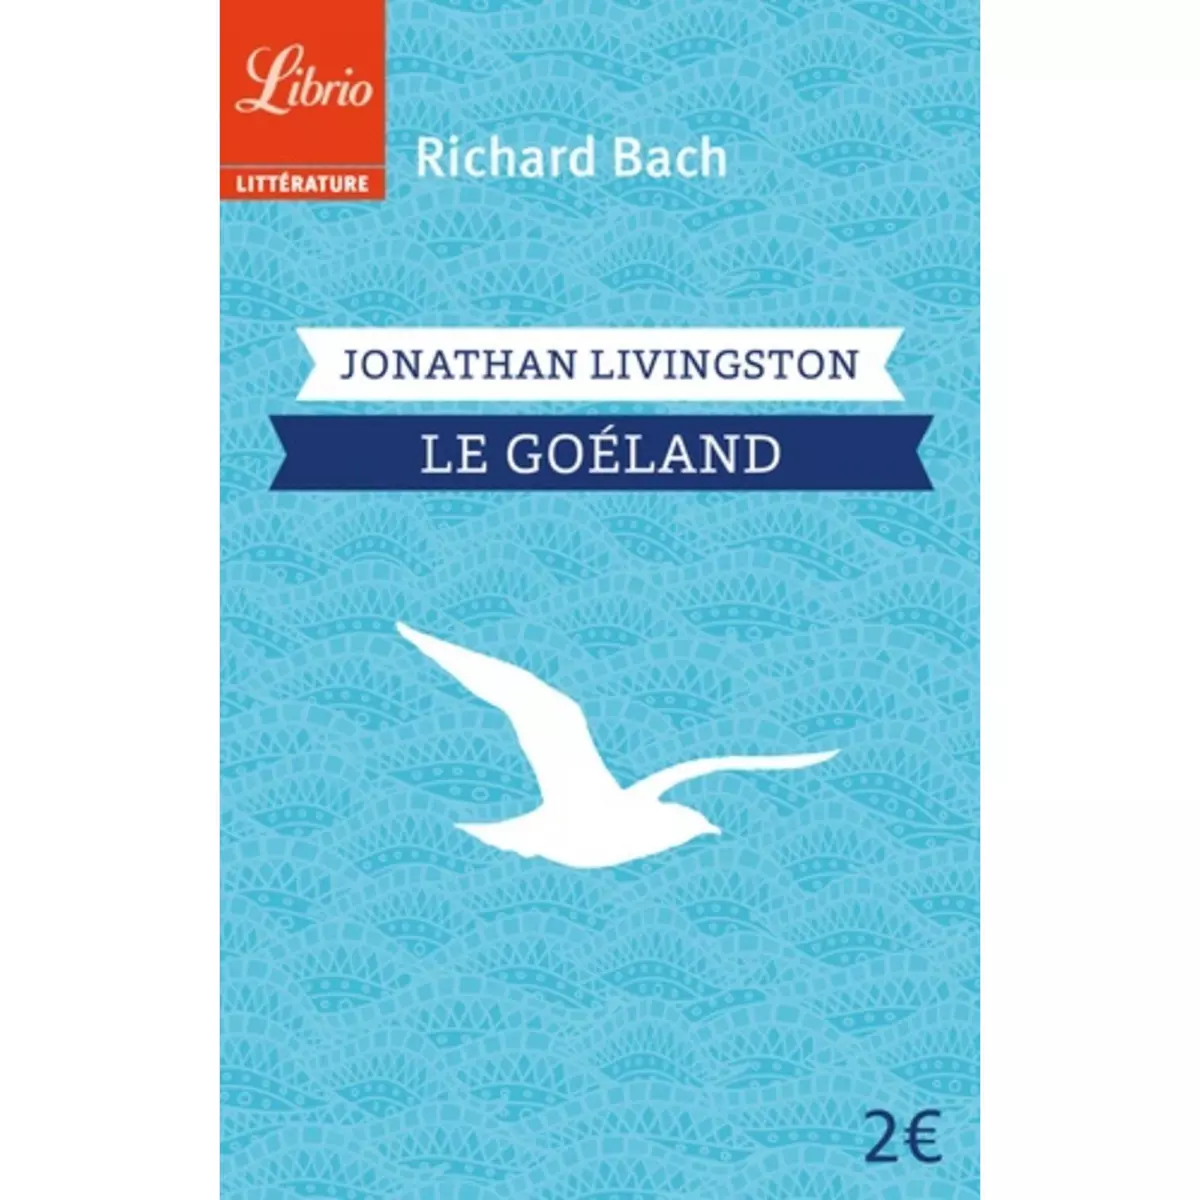  JONATHAN LIVINGSTON LE GOELAND, Bach Richard